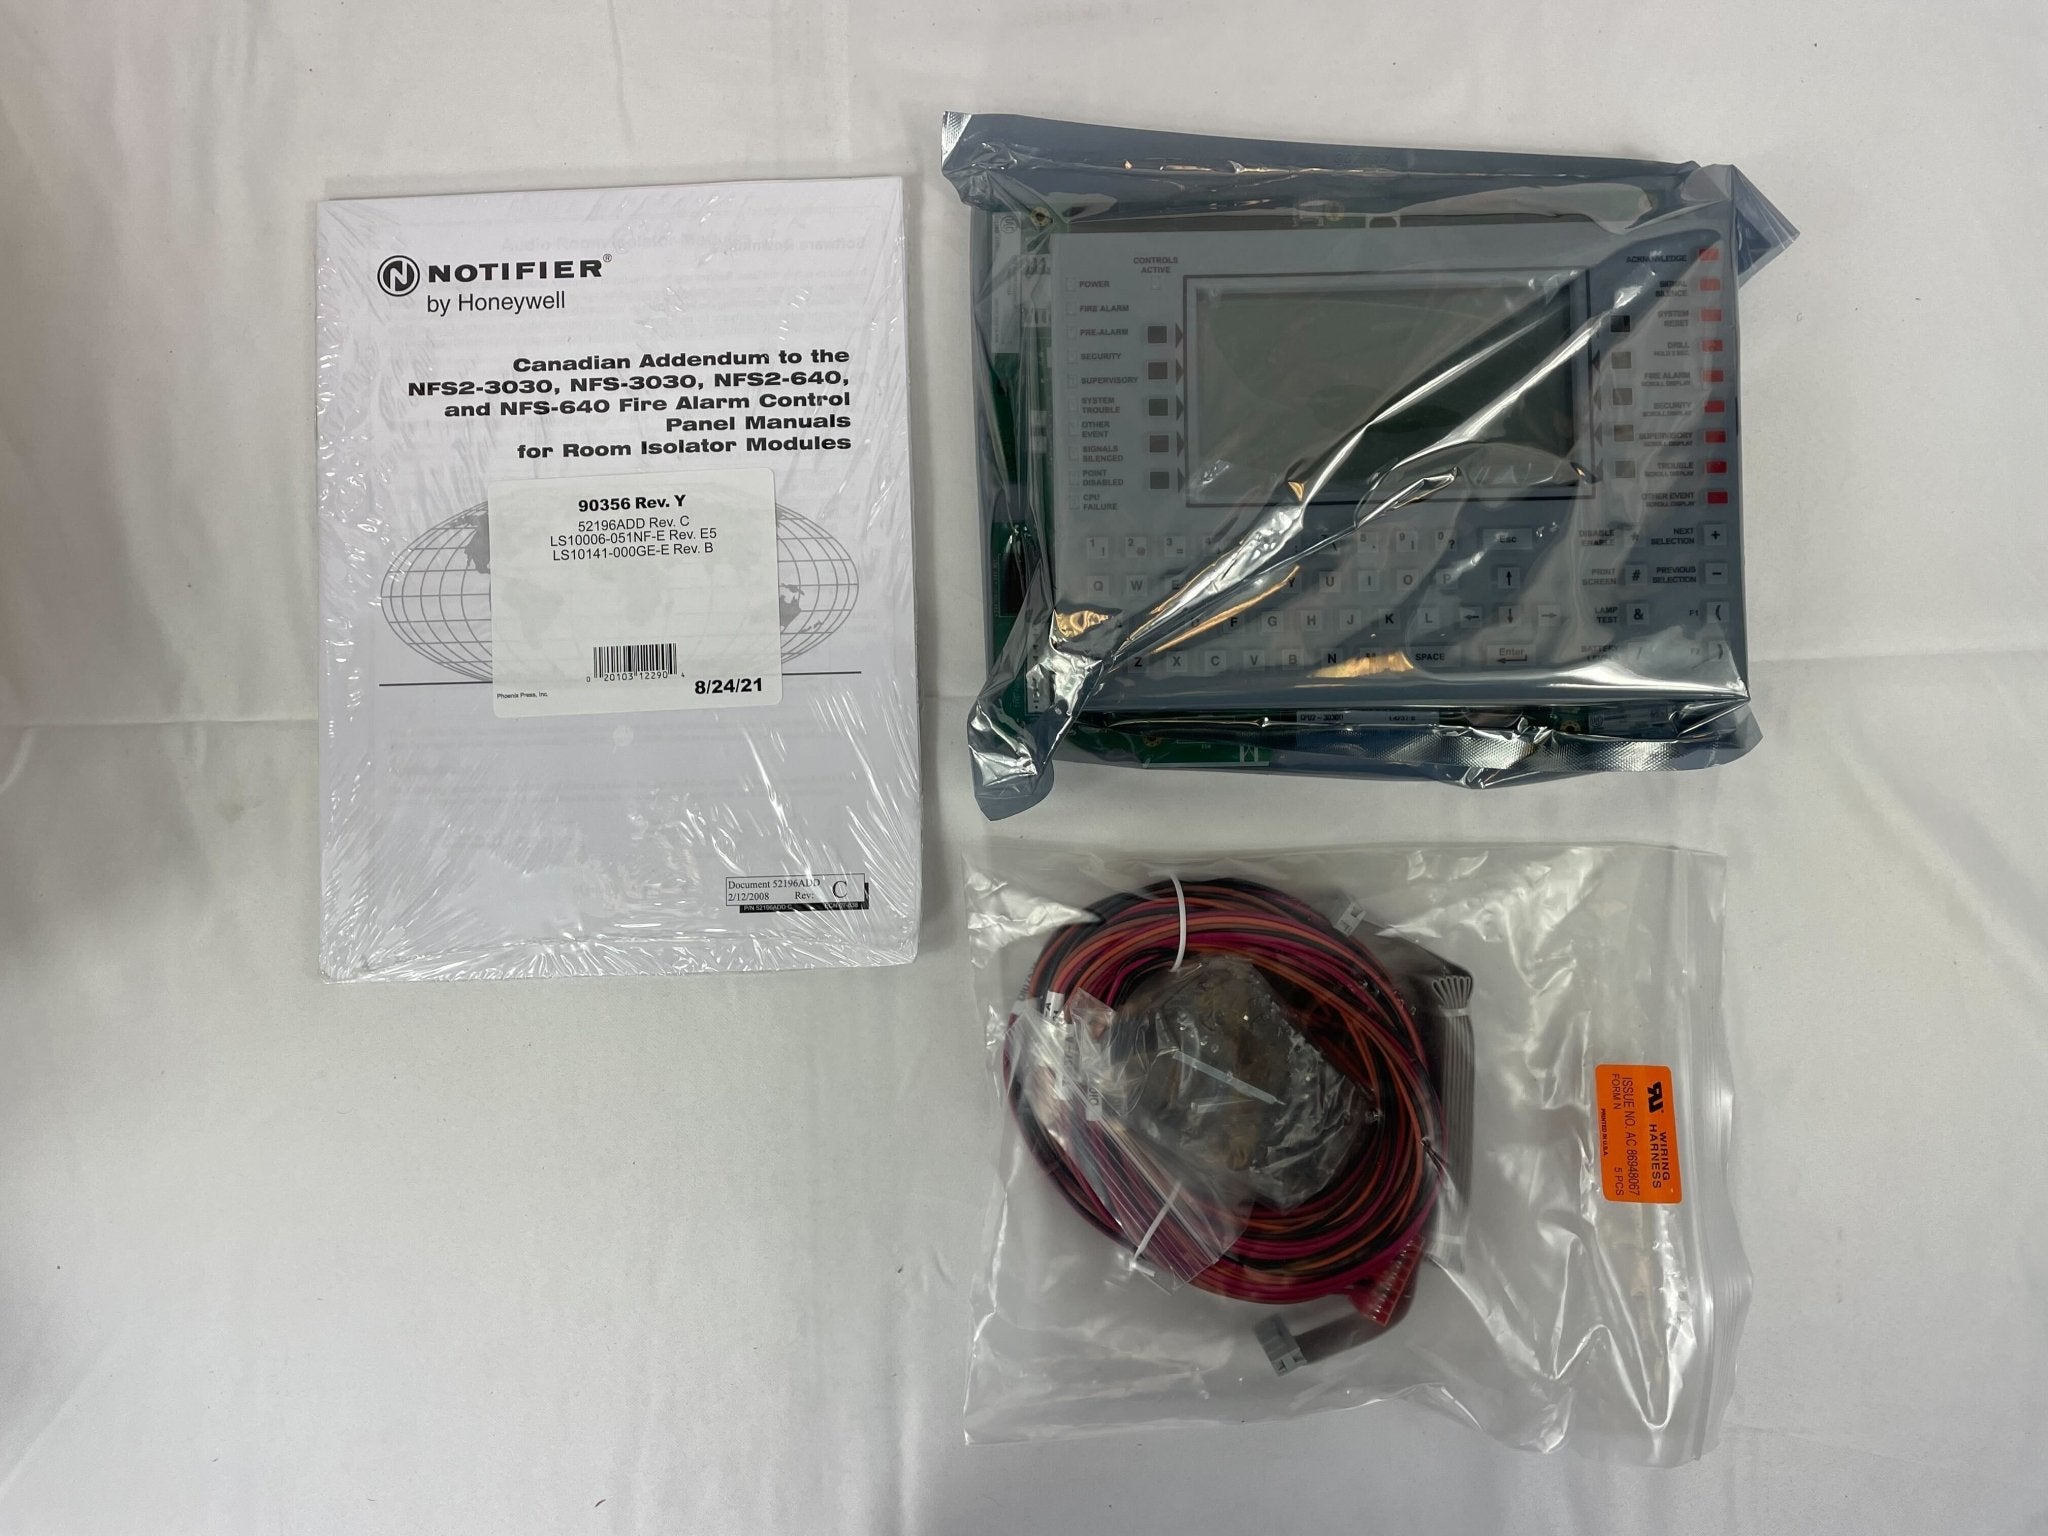 Notifier CPU2-3030D - The Fire Alarm Supplier